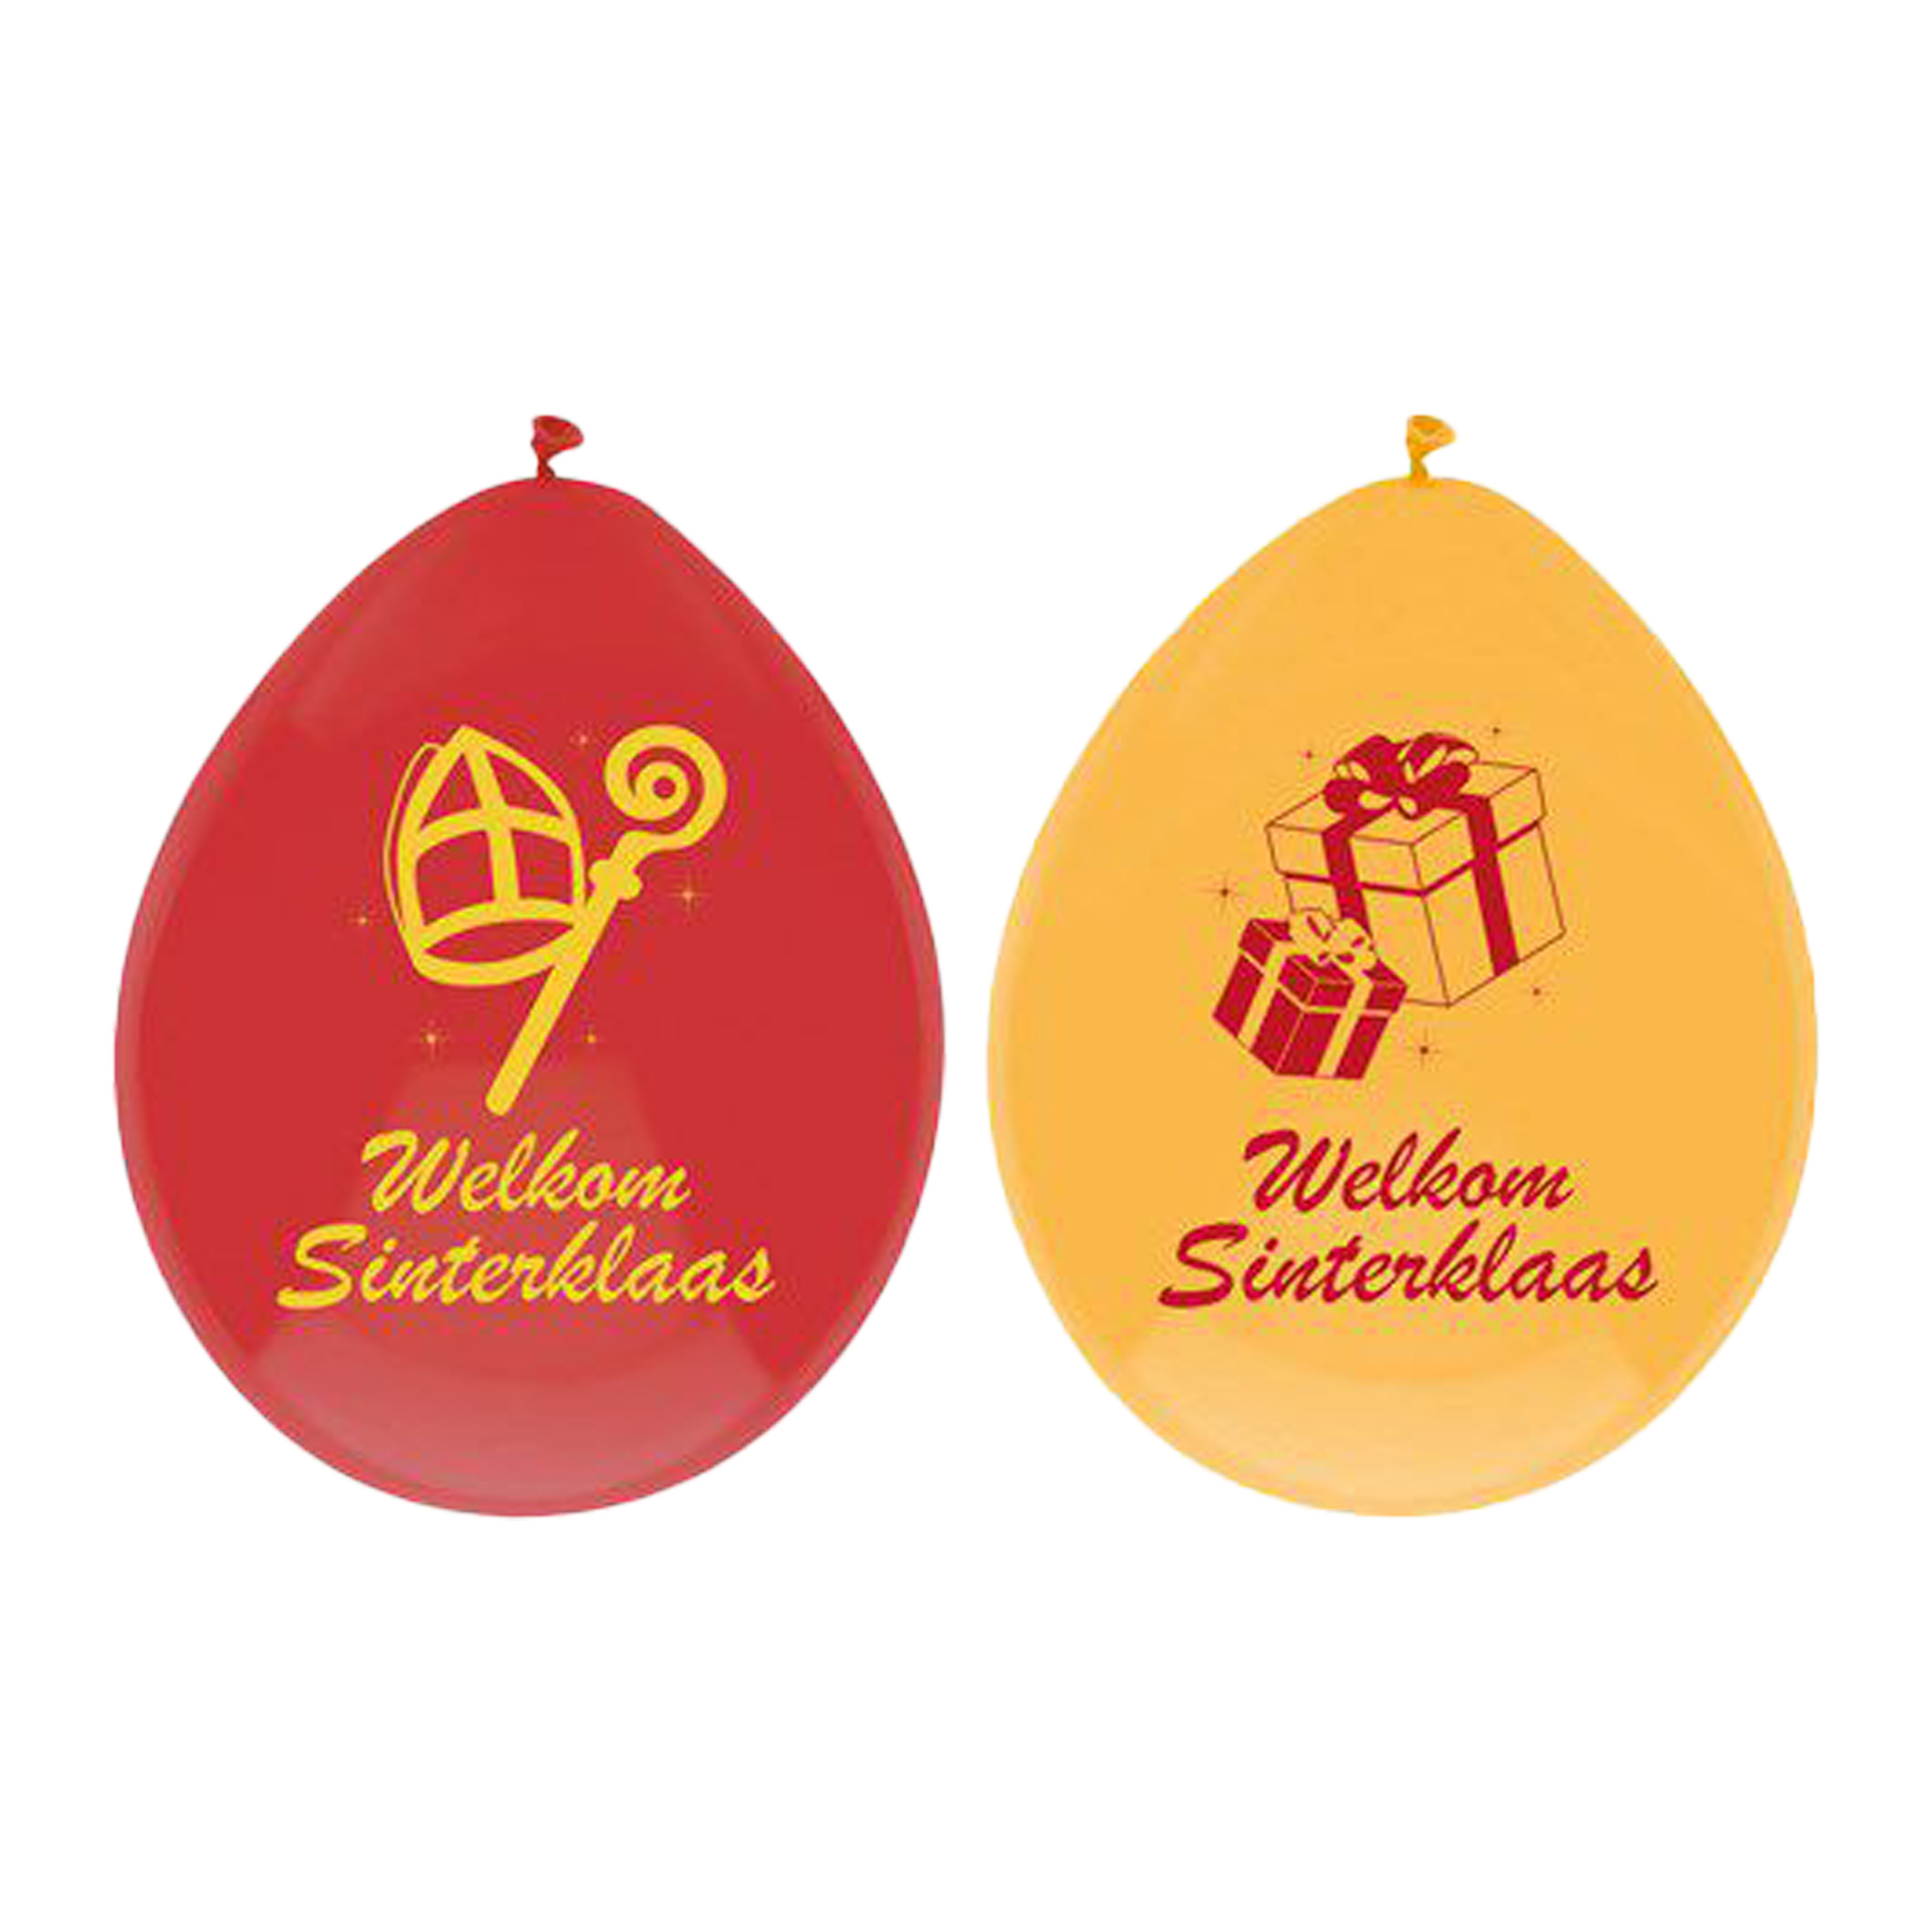 Welkom Sinterklaas ballonnen - 6x - geel/rood -